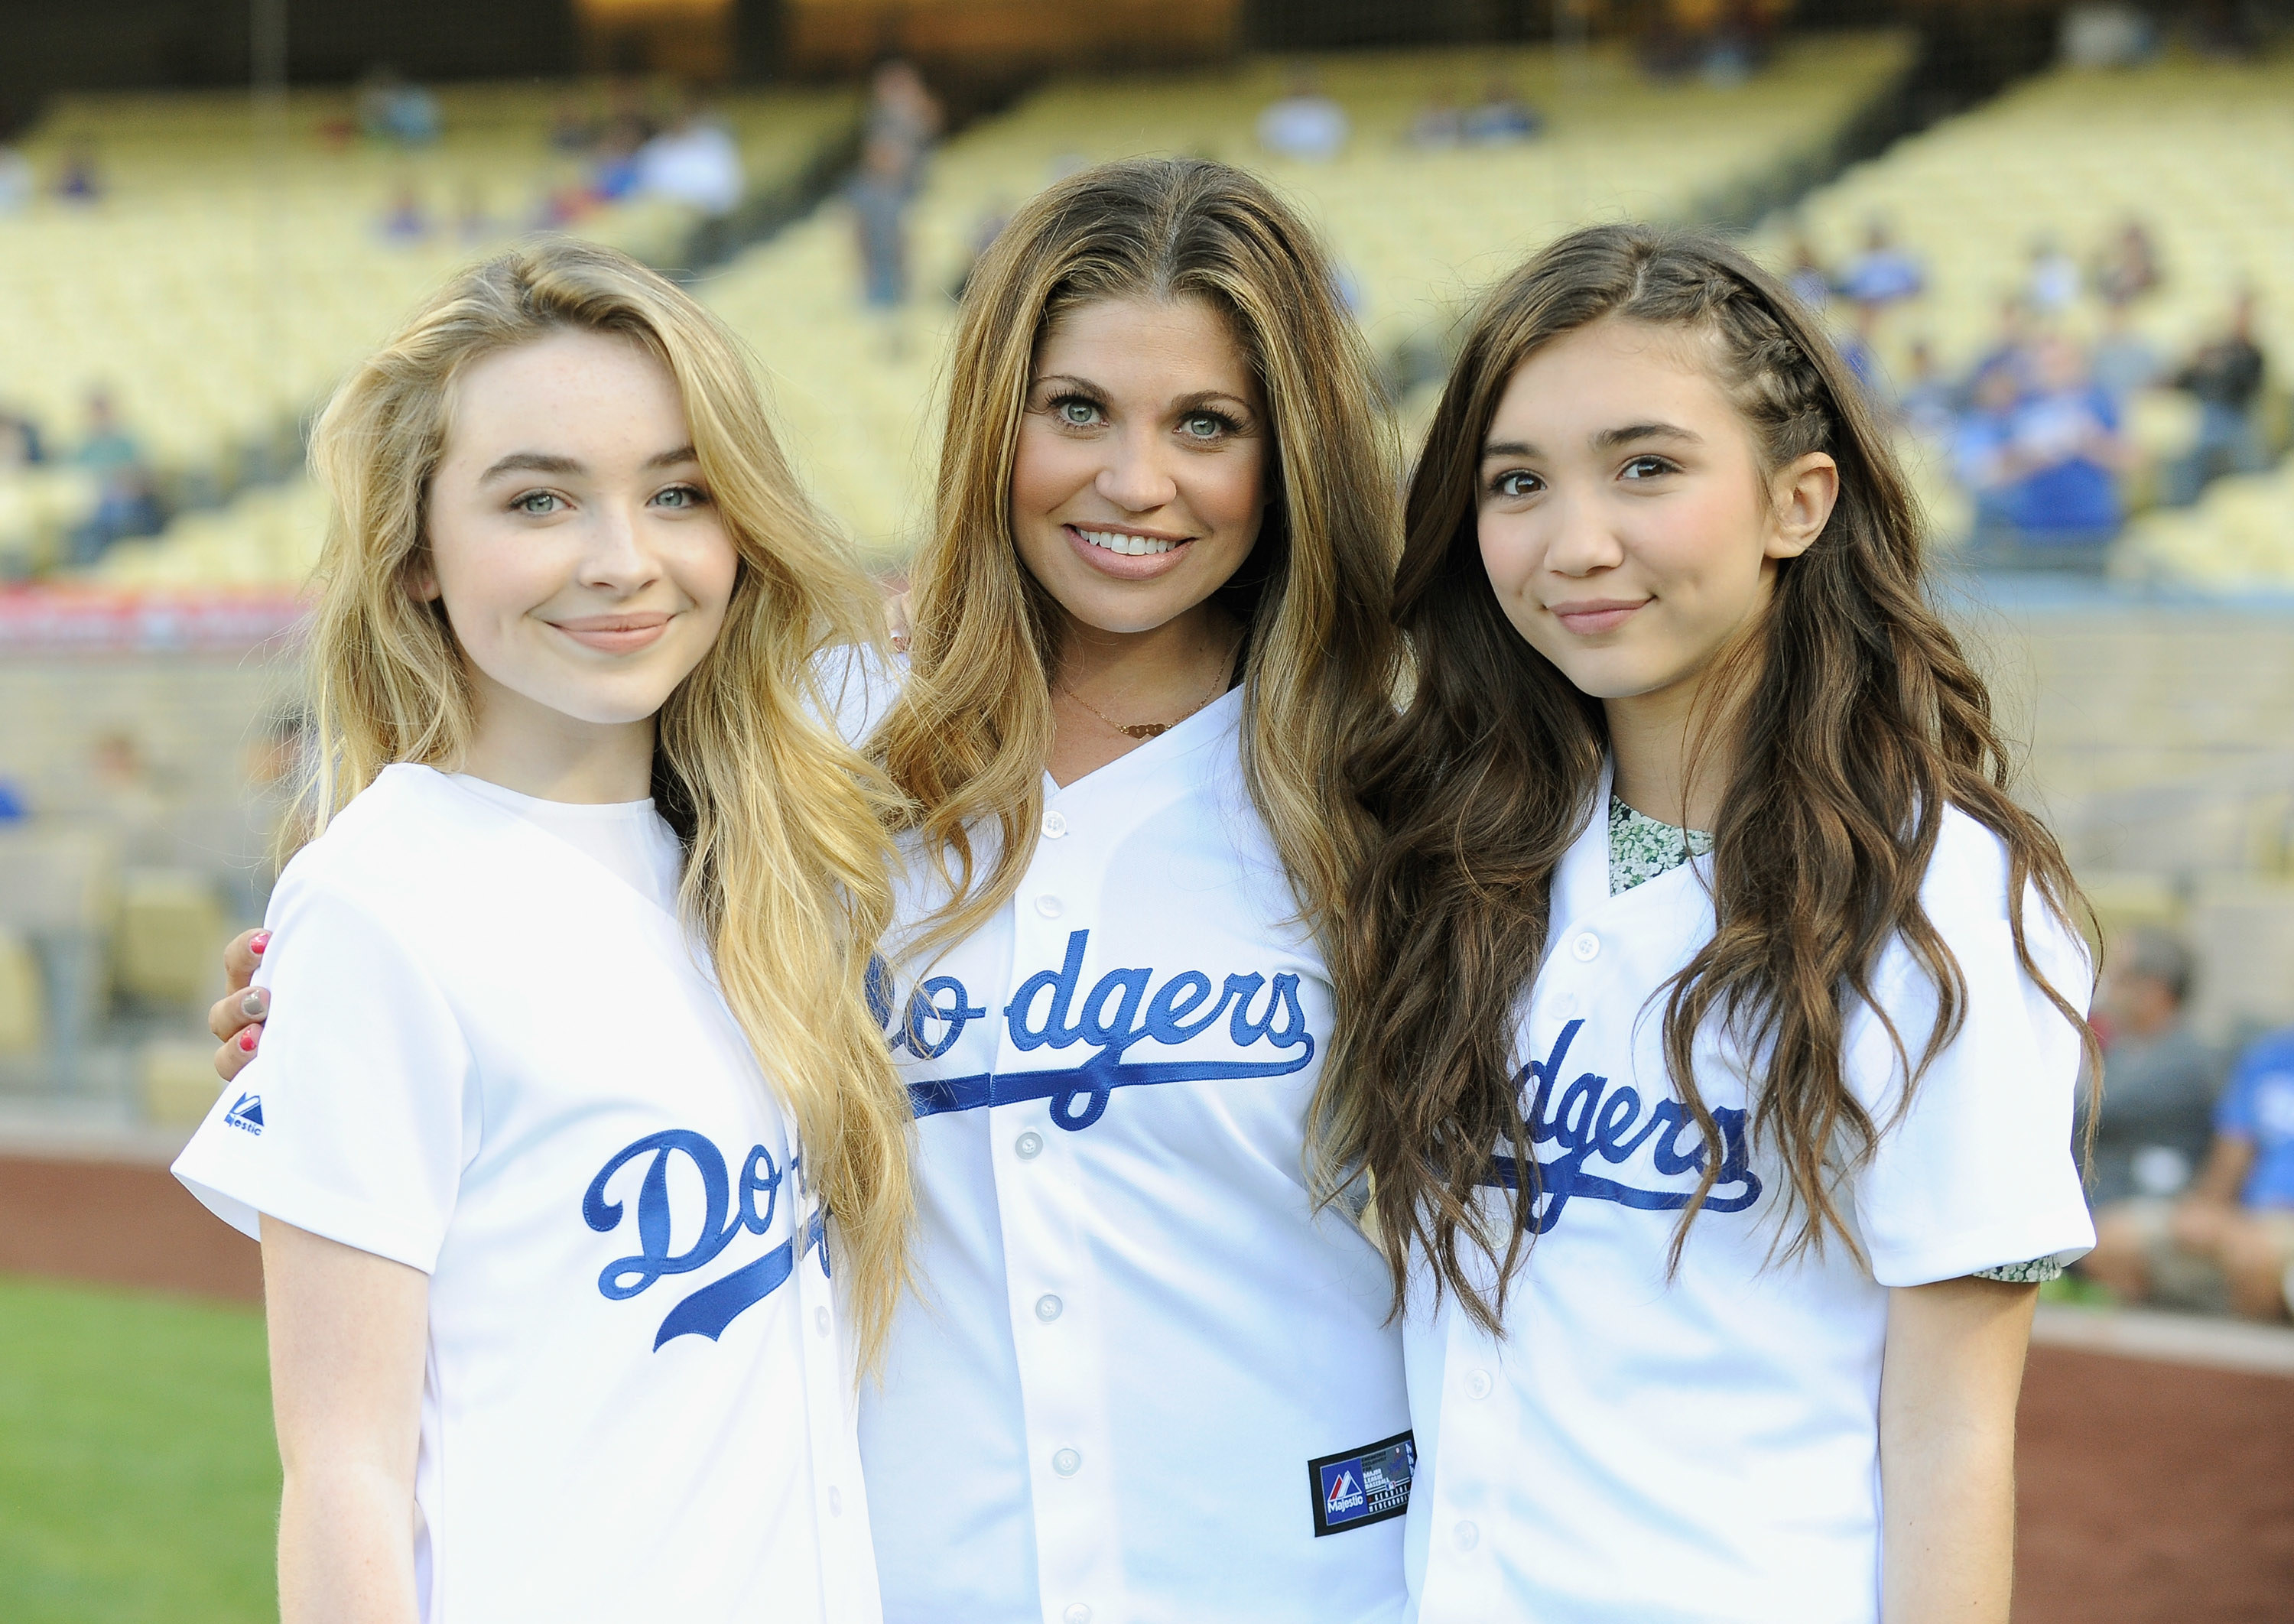 Rowan, Danielle, and Sabrina in Dodgers uniforms